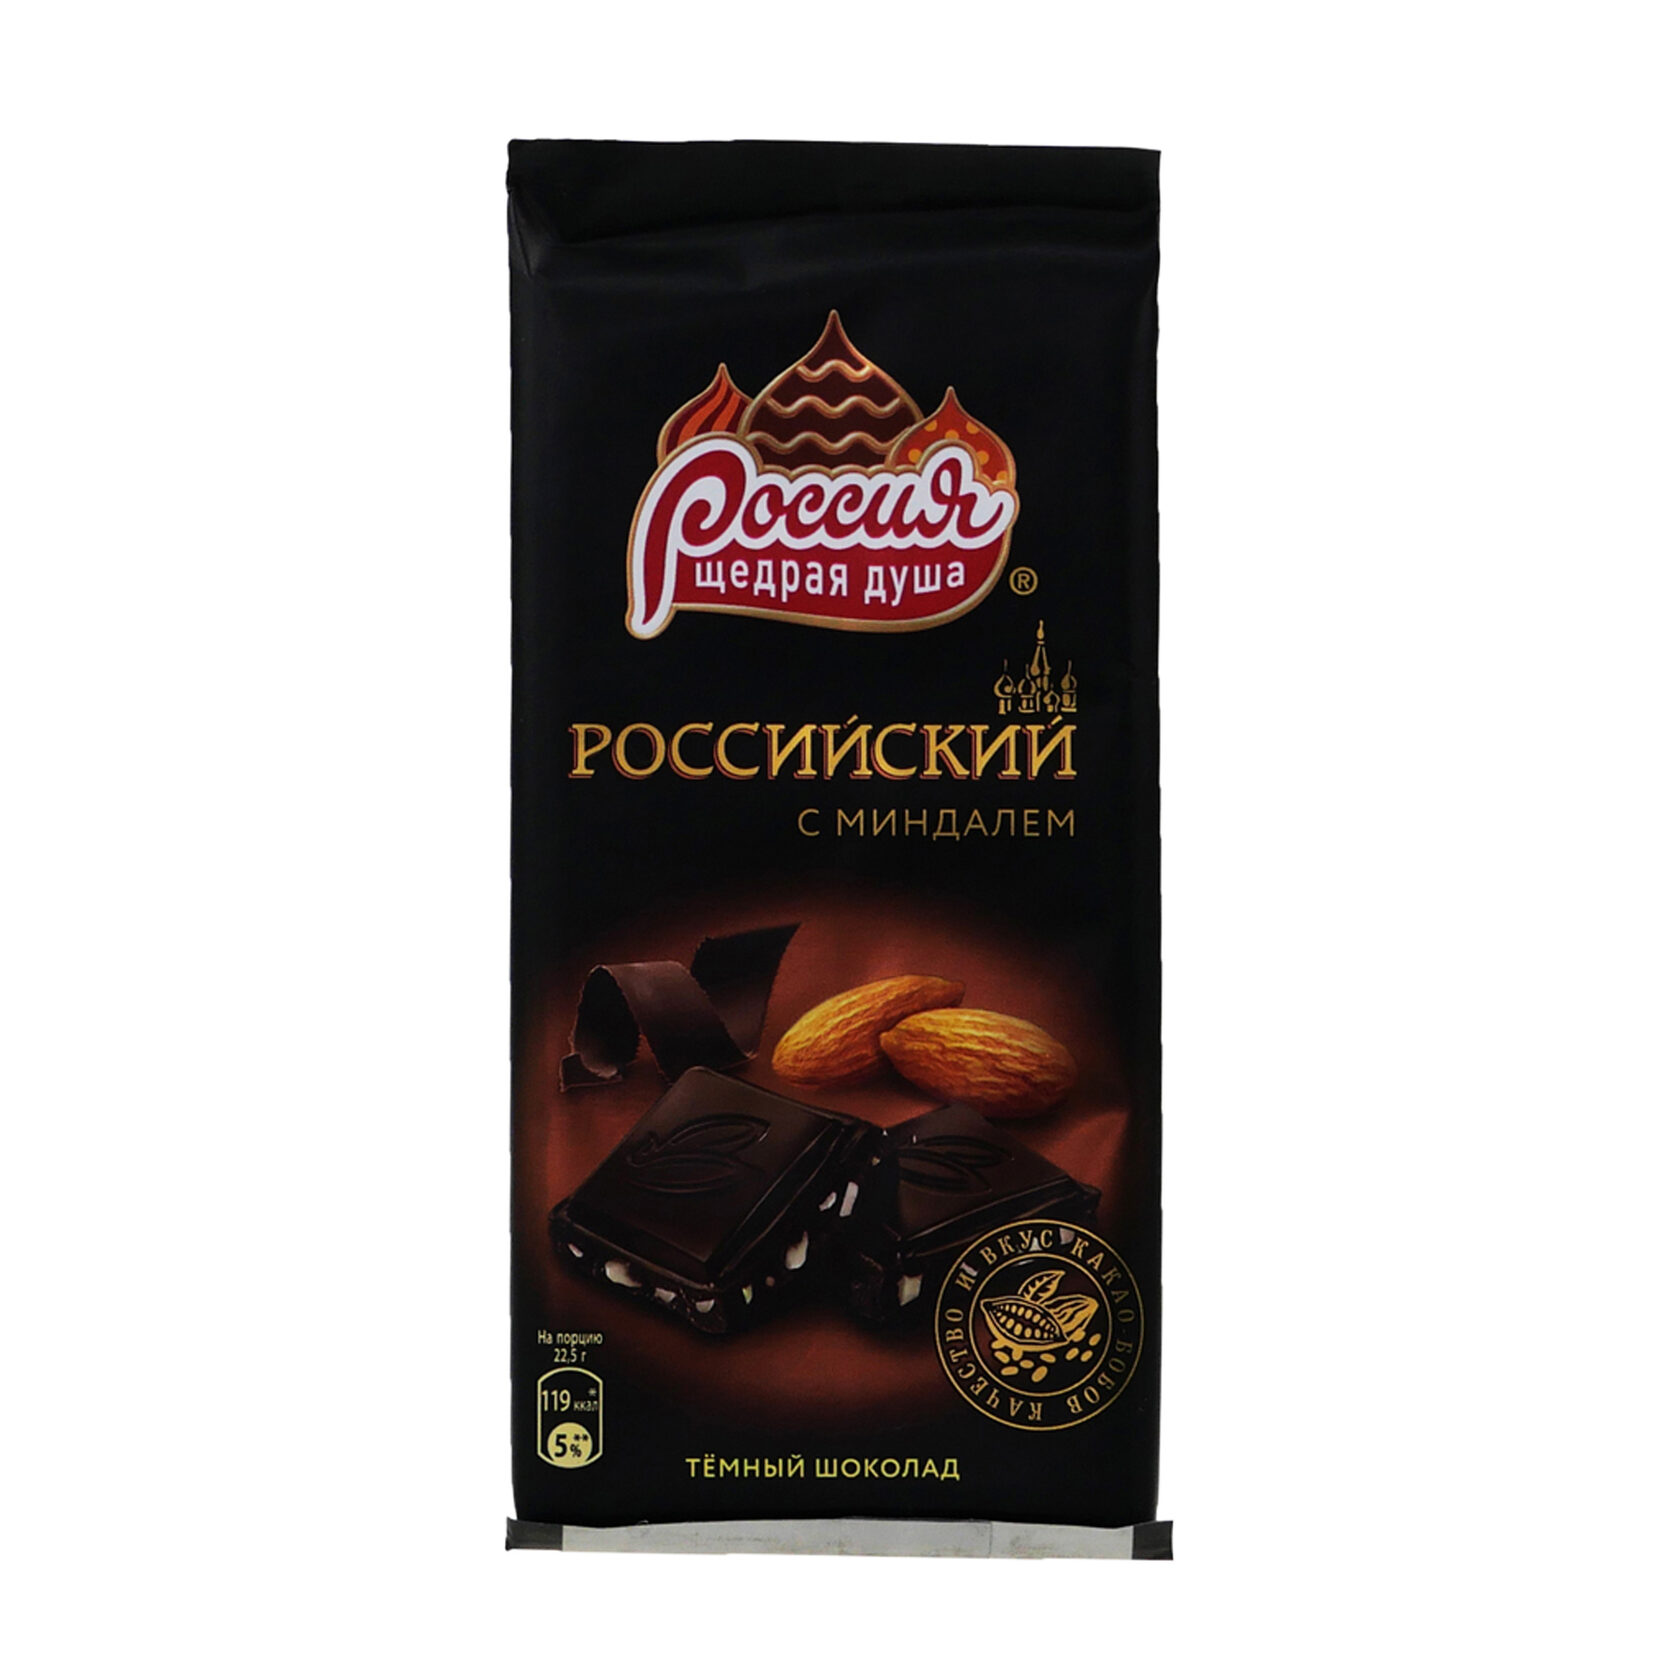 Качество шоколада россия